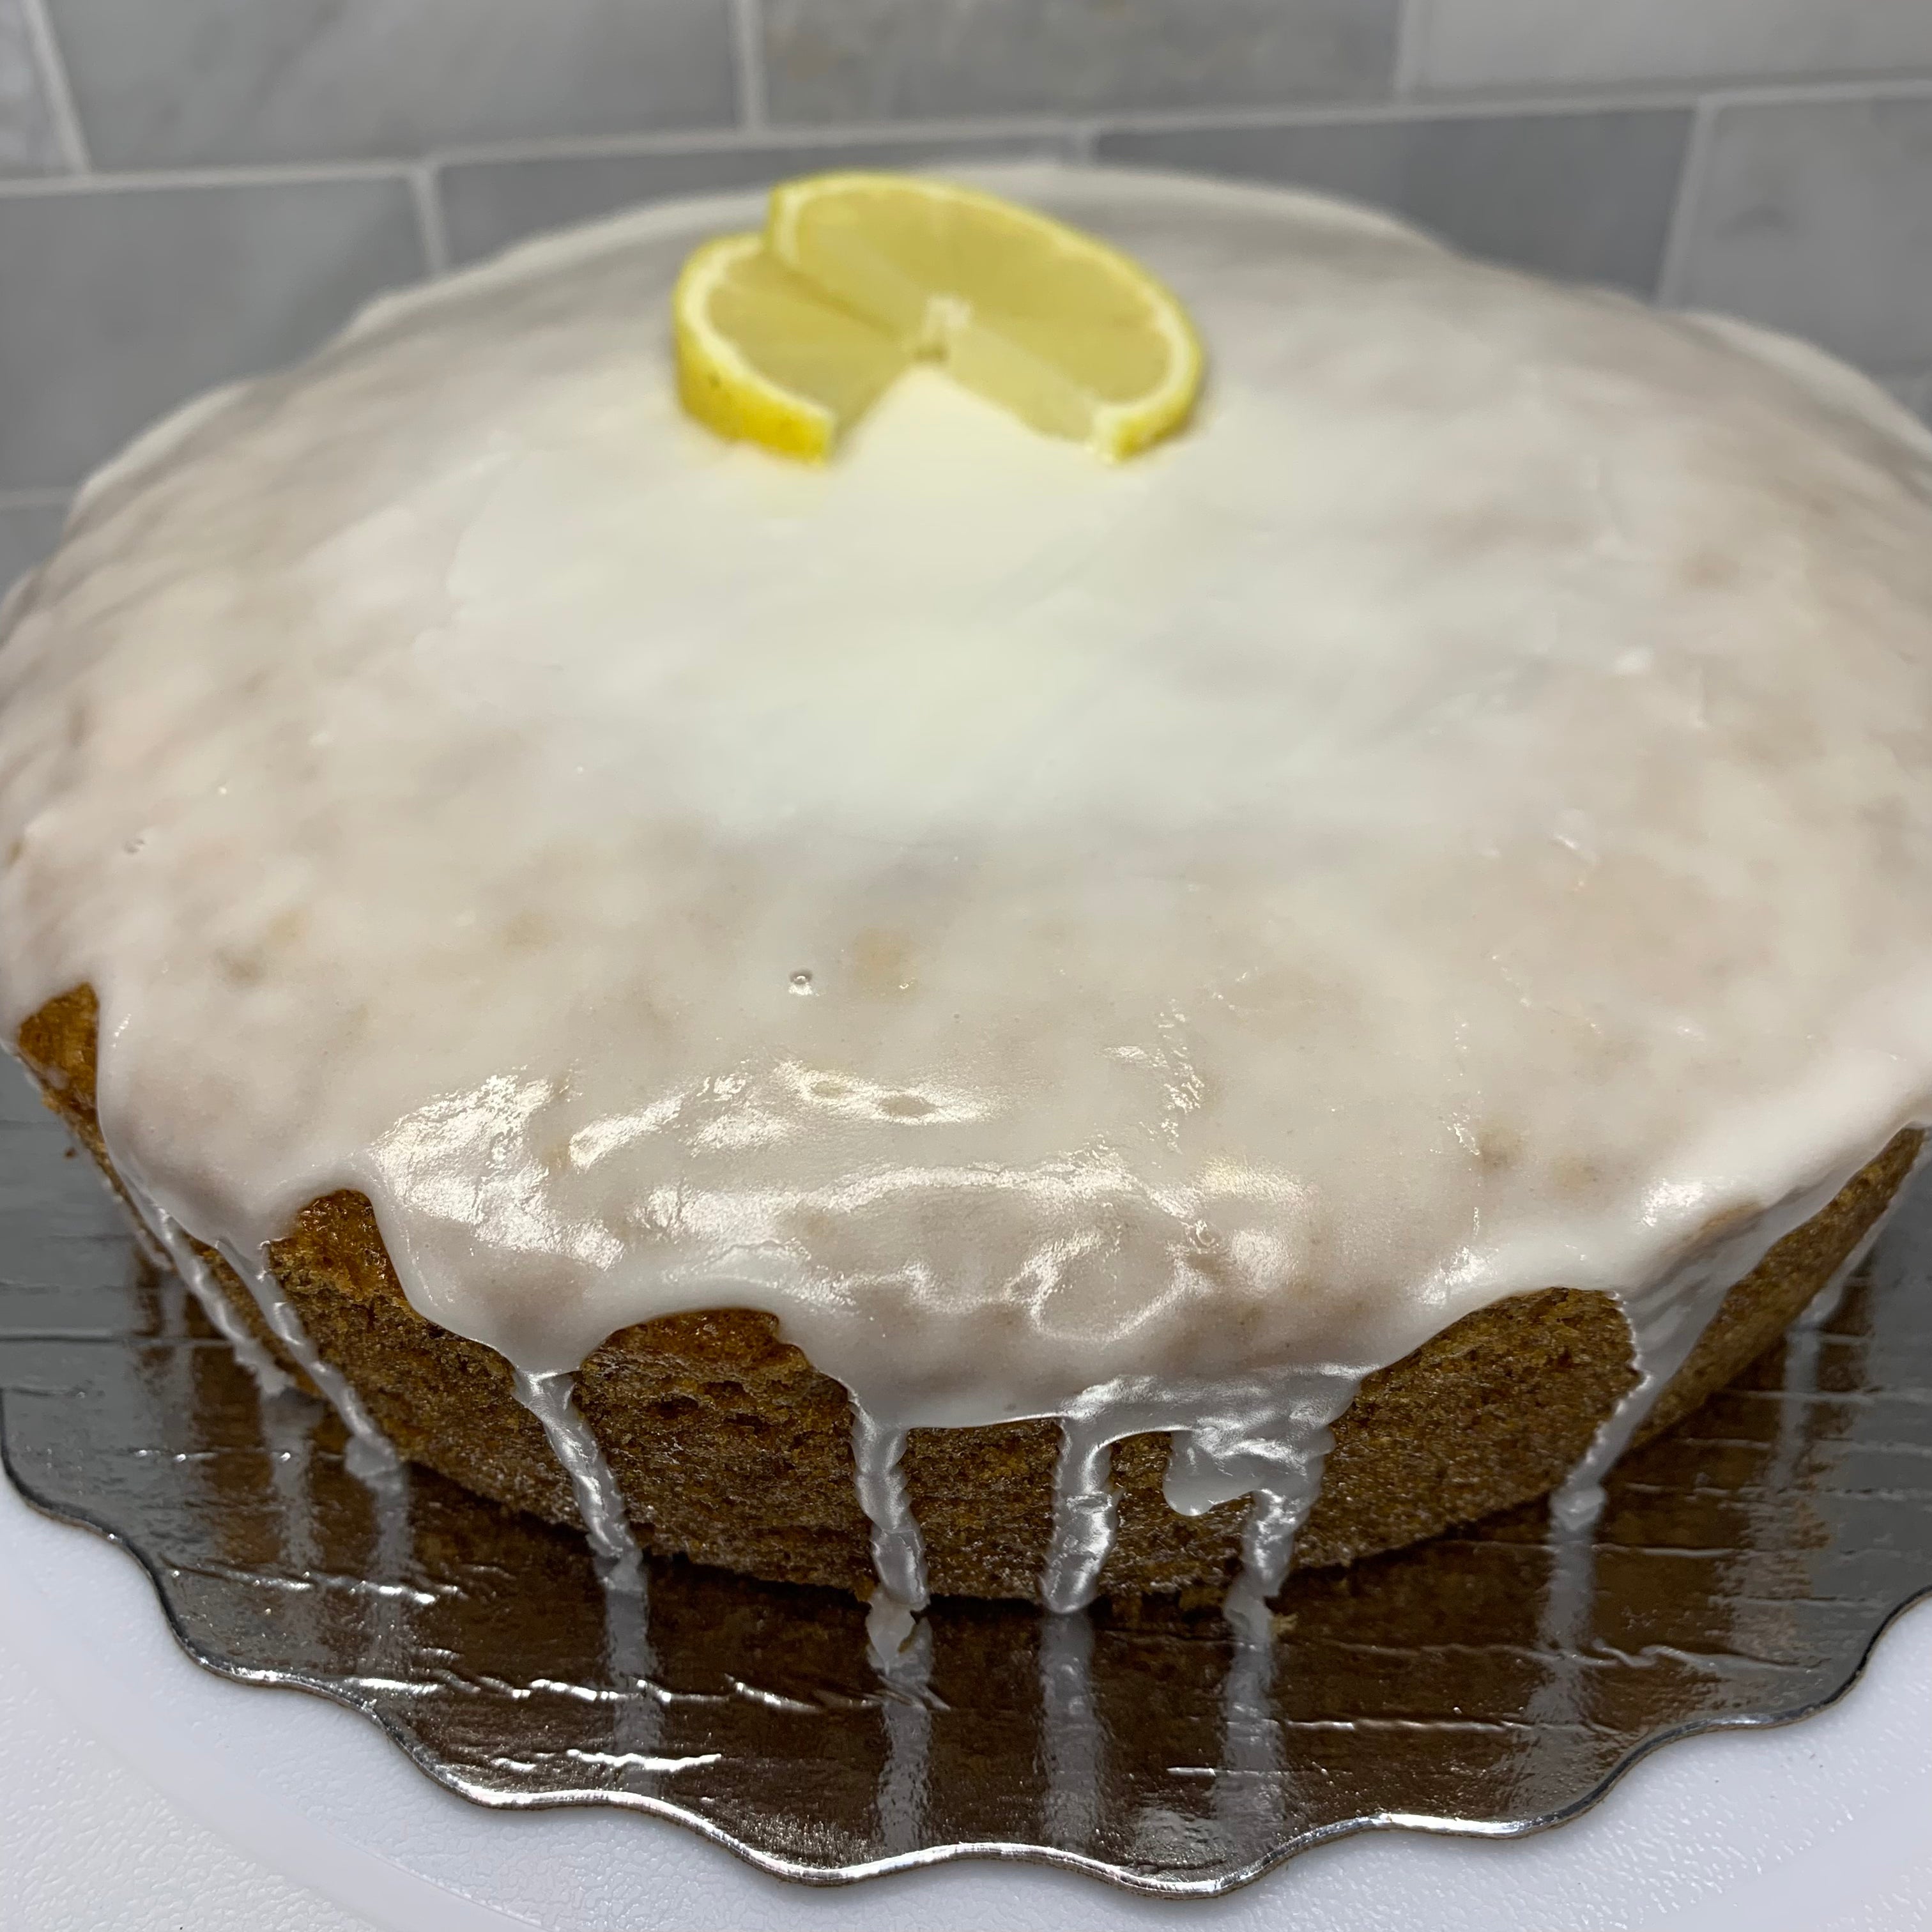 Lemon Cake!